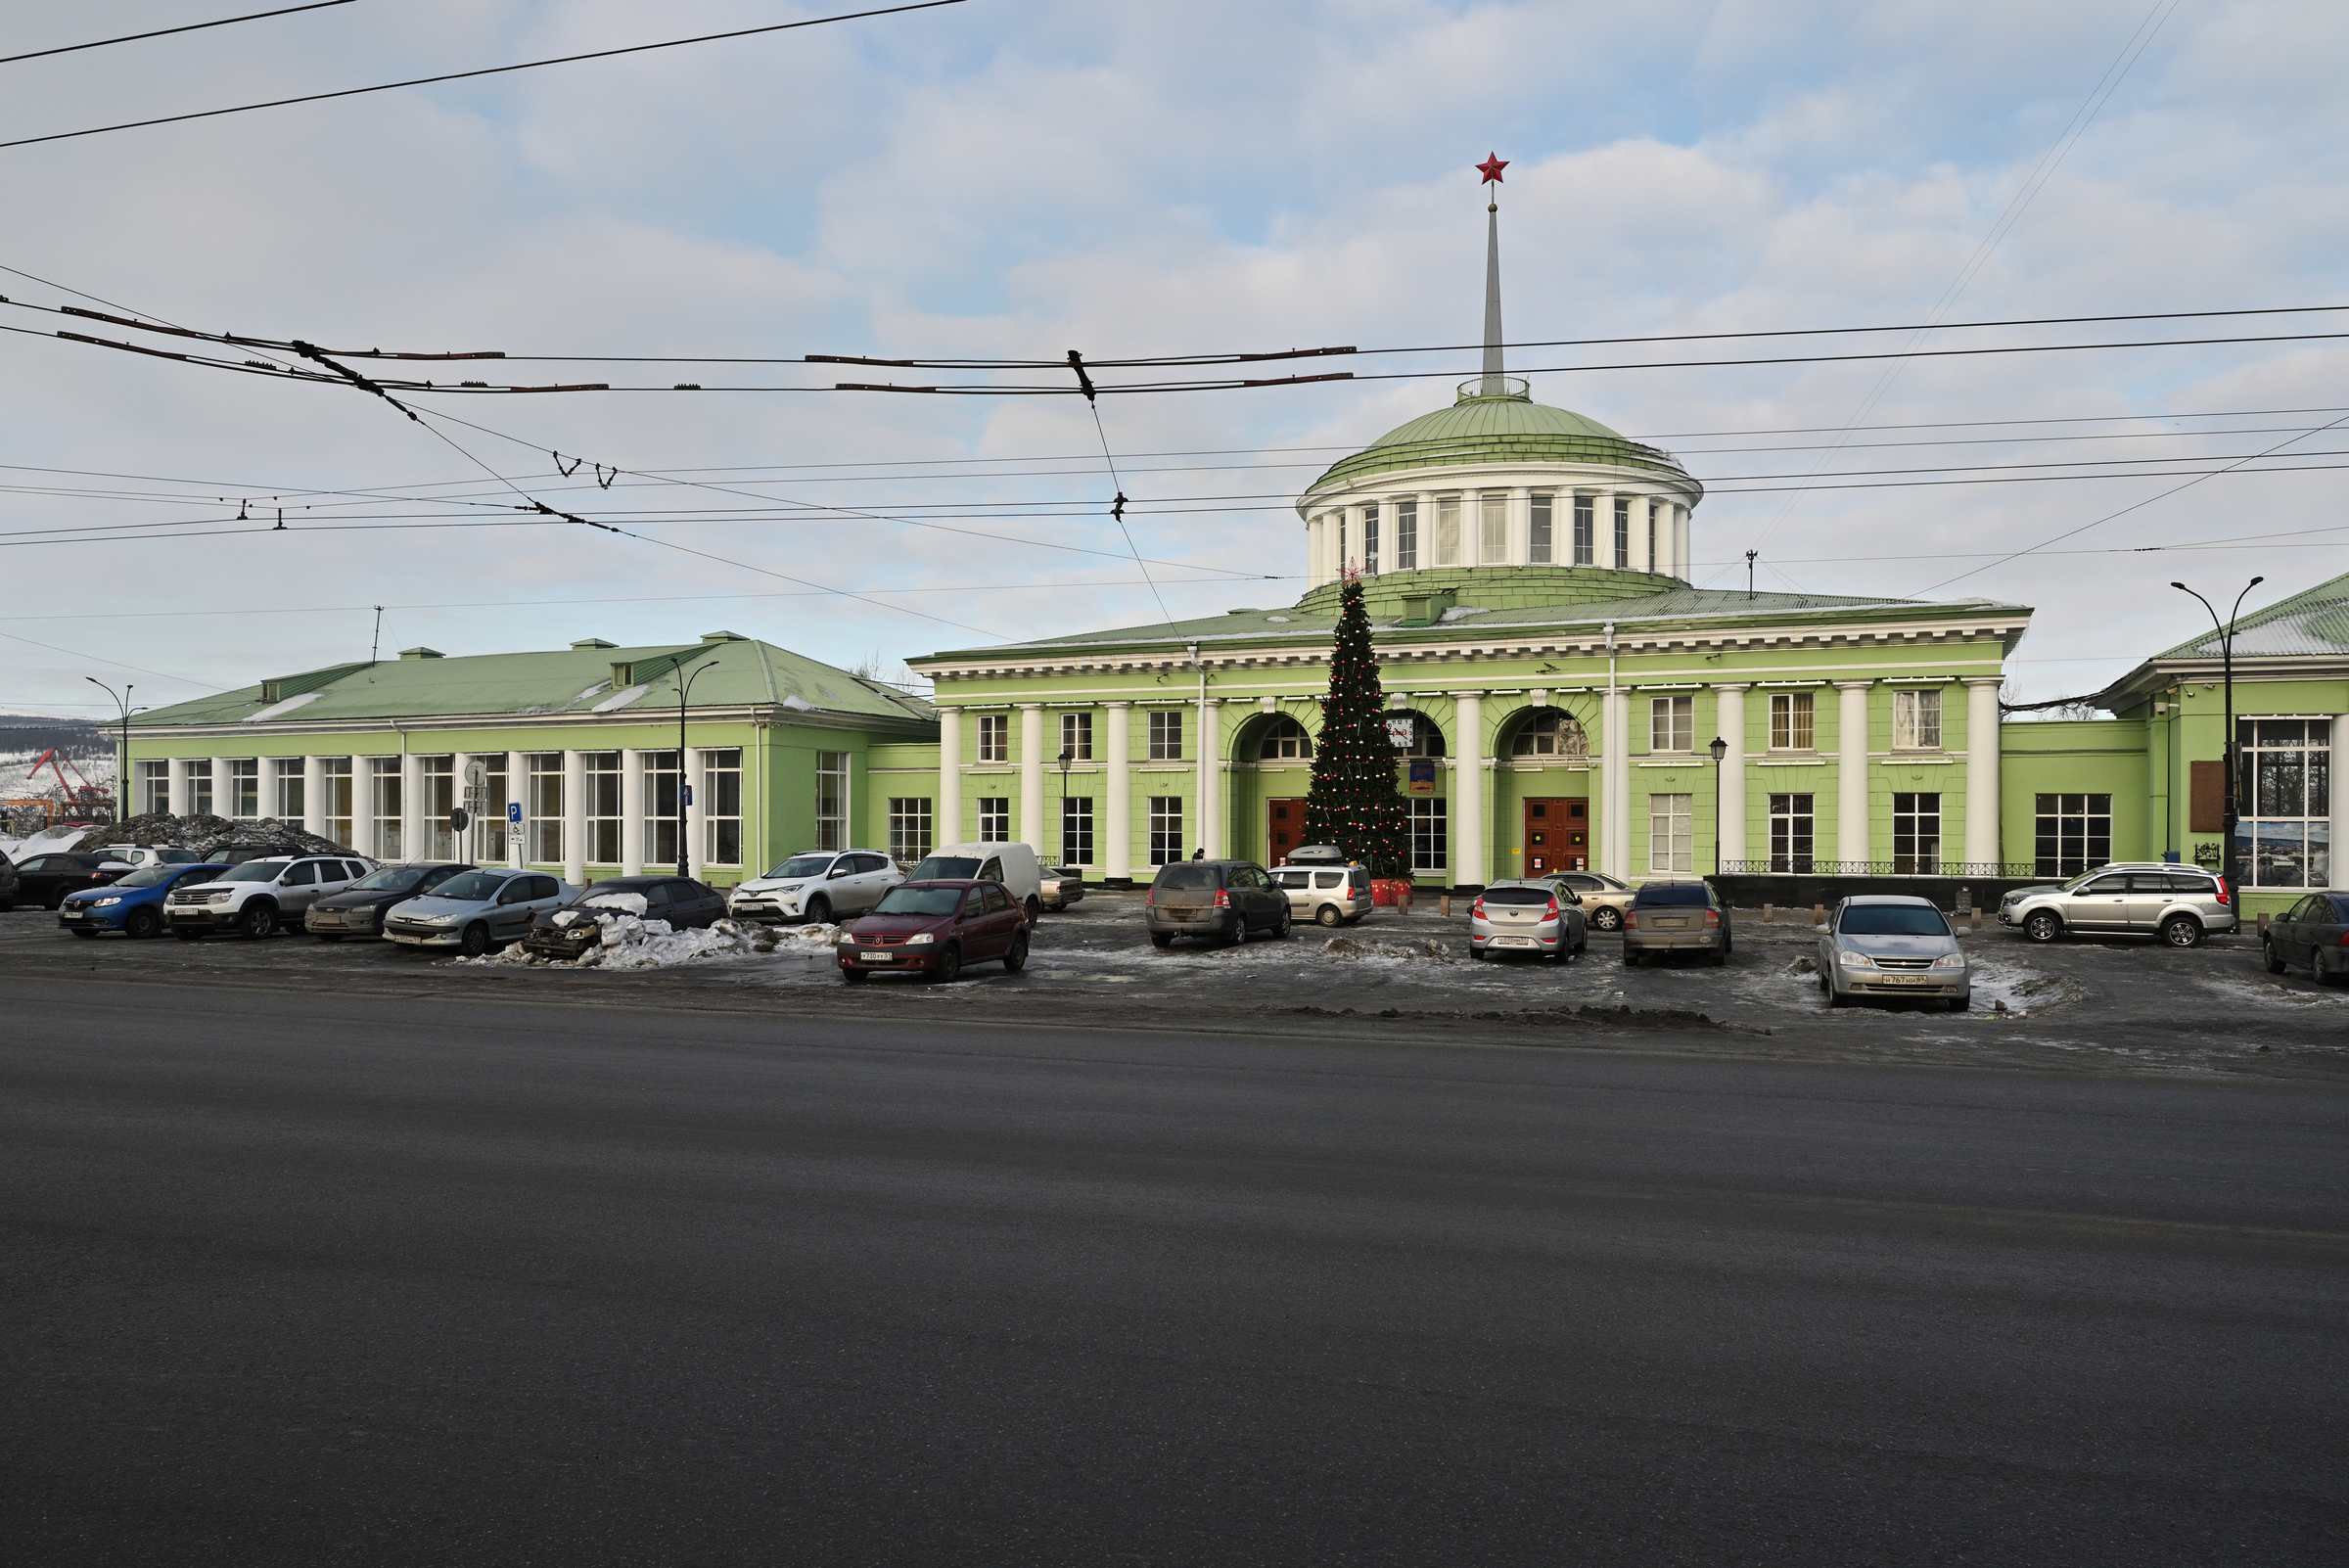 Мурманск в марте. Железнодорожный вокзал Мурманск.